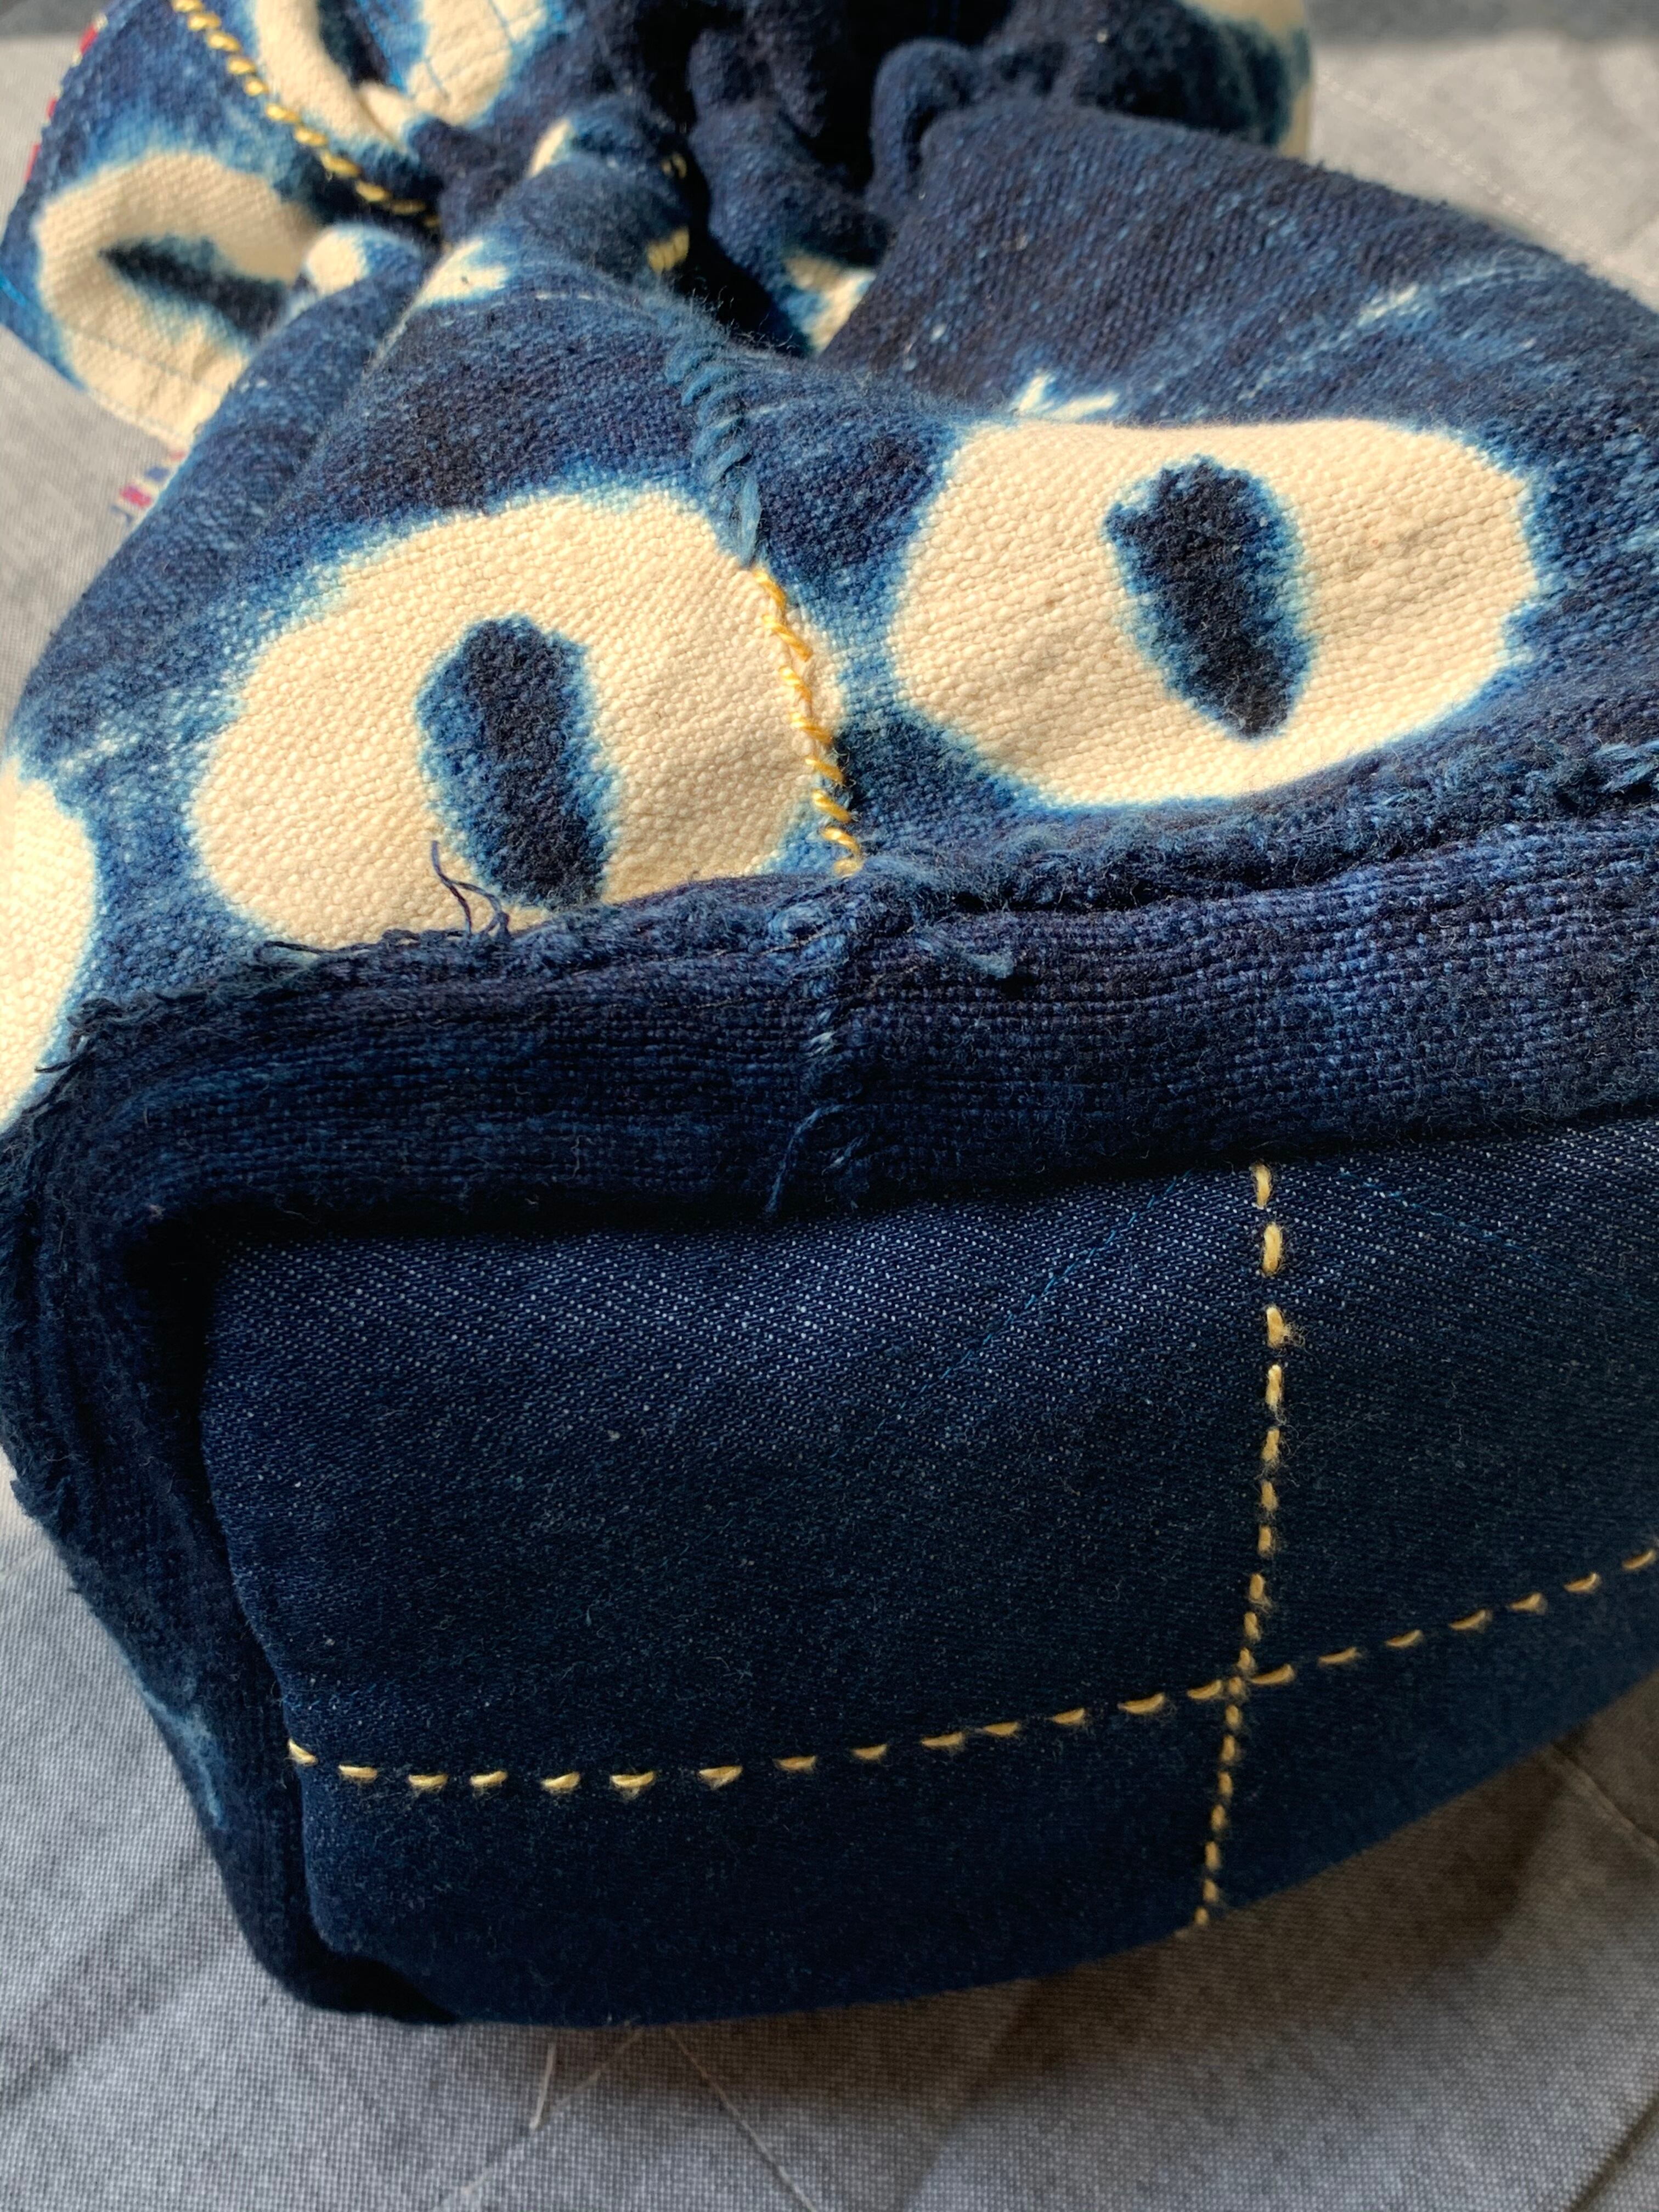 マリの藍染布で作った巾着バッグE